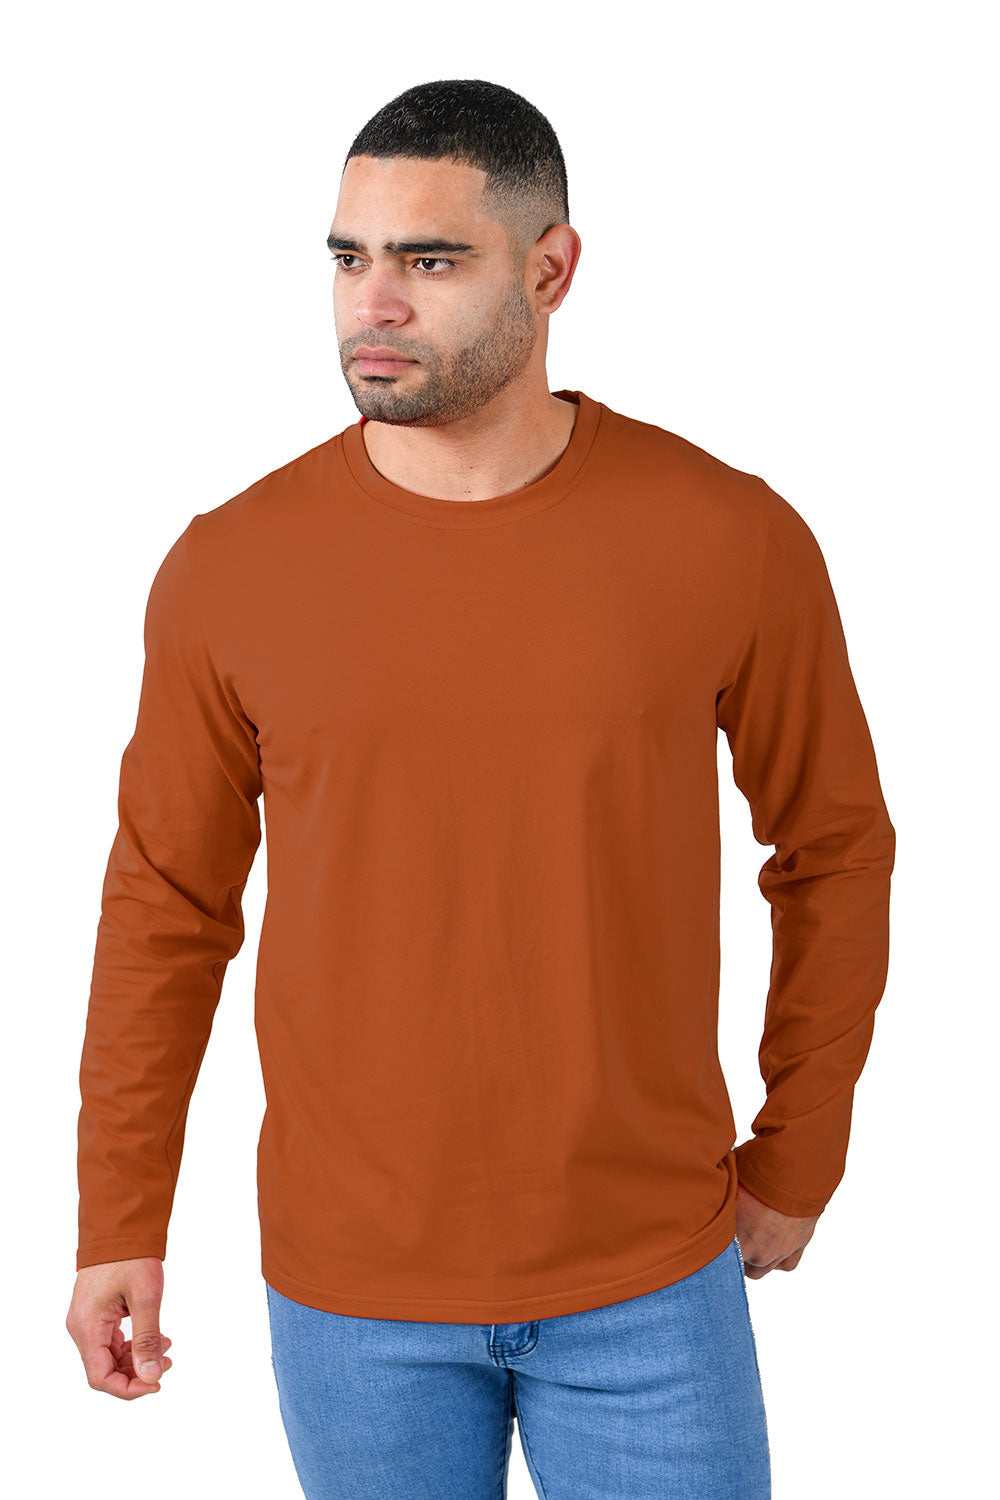 Barabas Men's Solid Color Crew Neck Sweatshirts LV127 rust